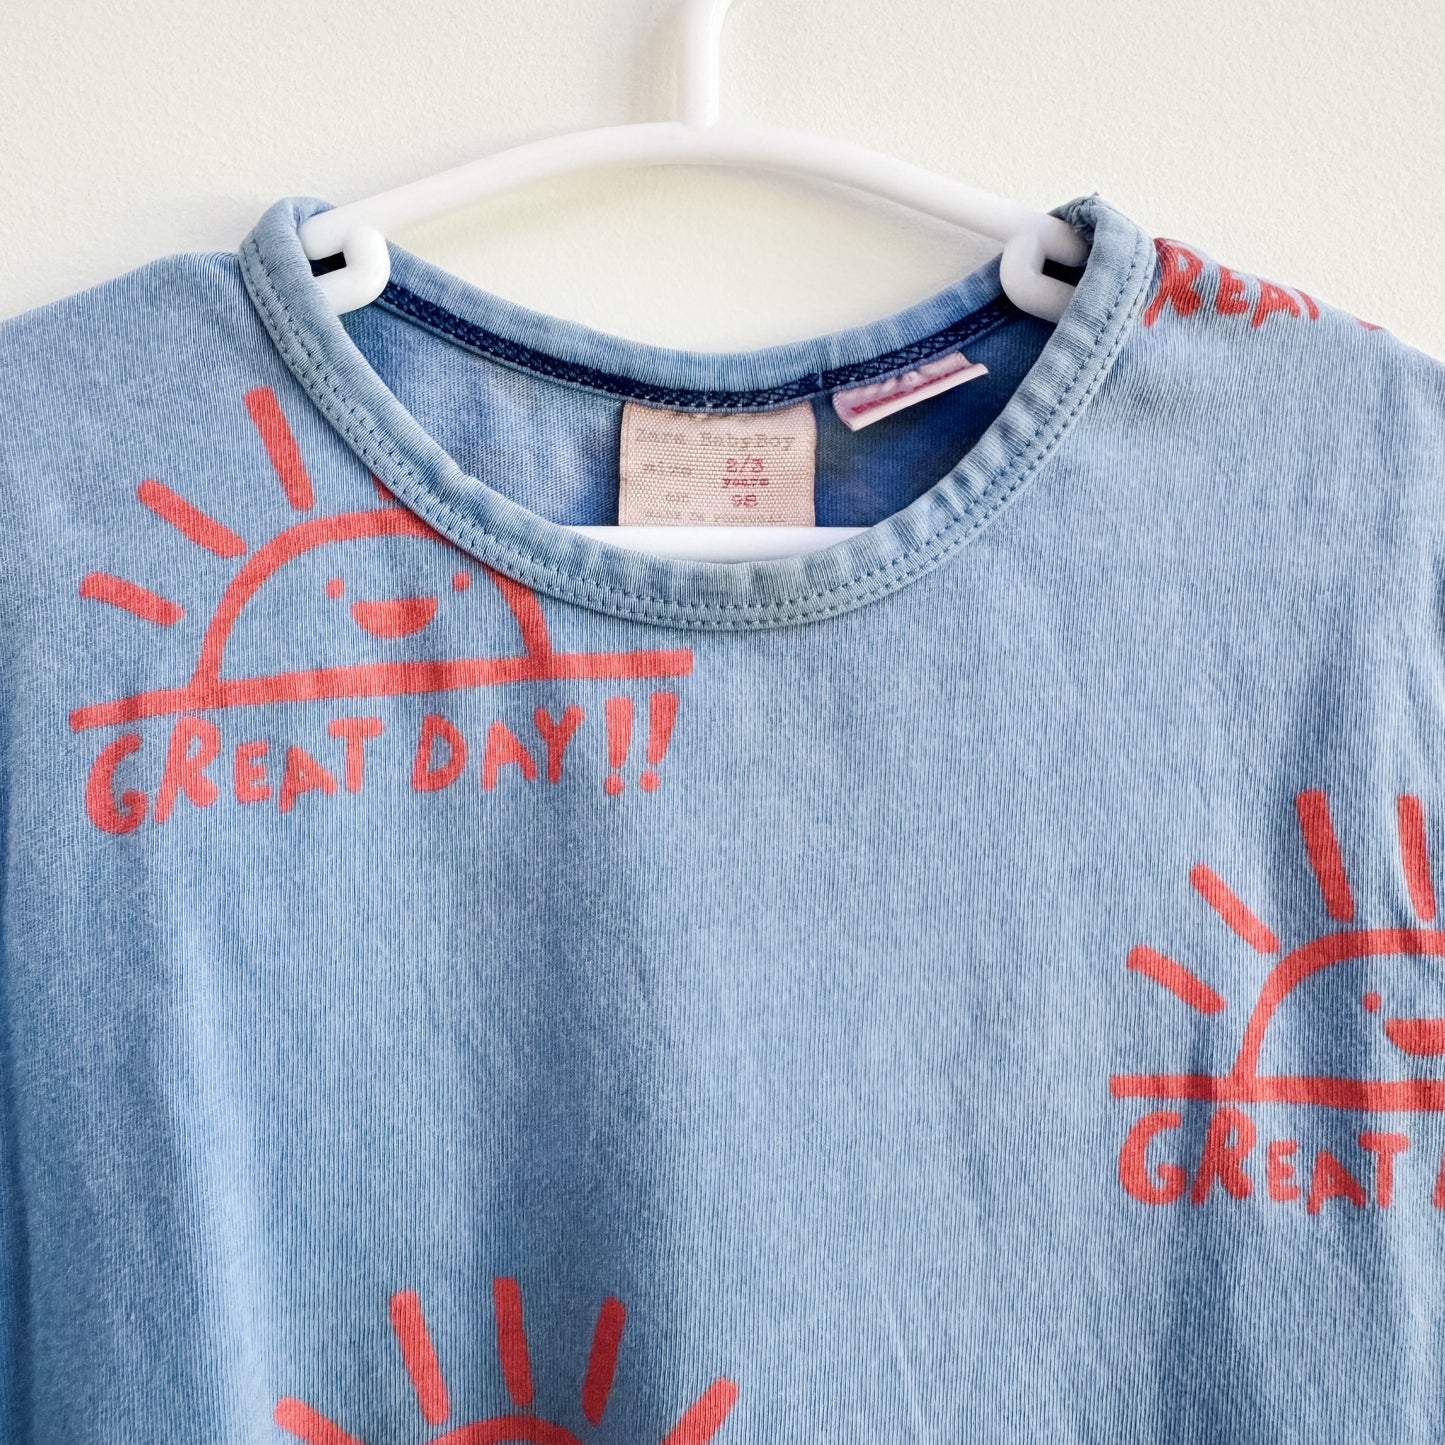 Zara Great Day Sun Print T-Shirt (2-3yr)